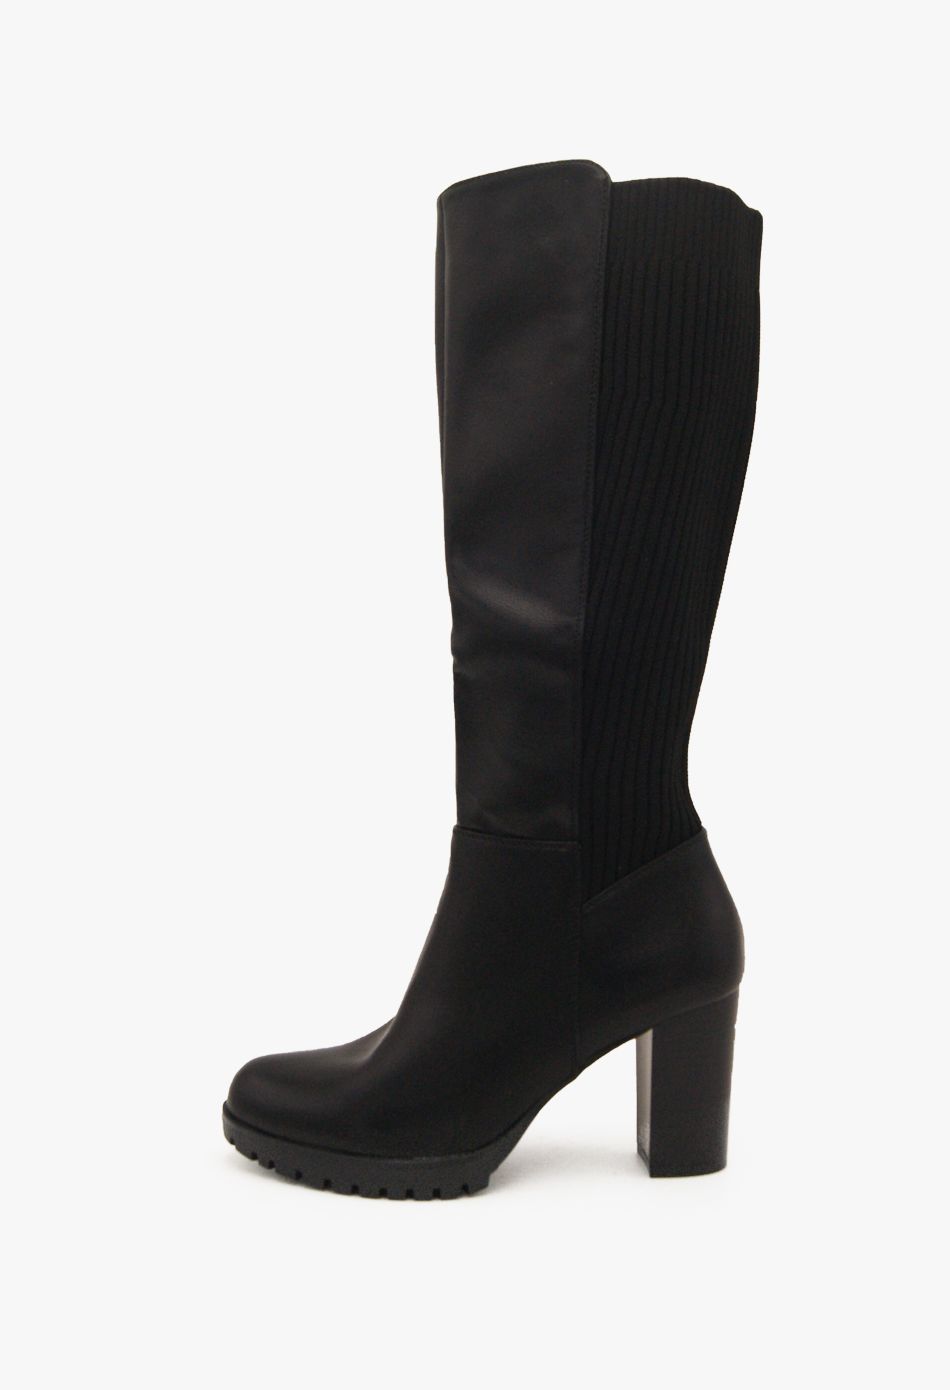 Μπότες με Λάστιχο και Χοντρό Ψηλό Τακούνι Μαύρο / CHC232-black Γυναικεία Mπότες joya.gr